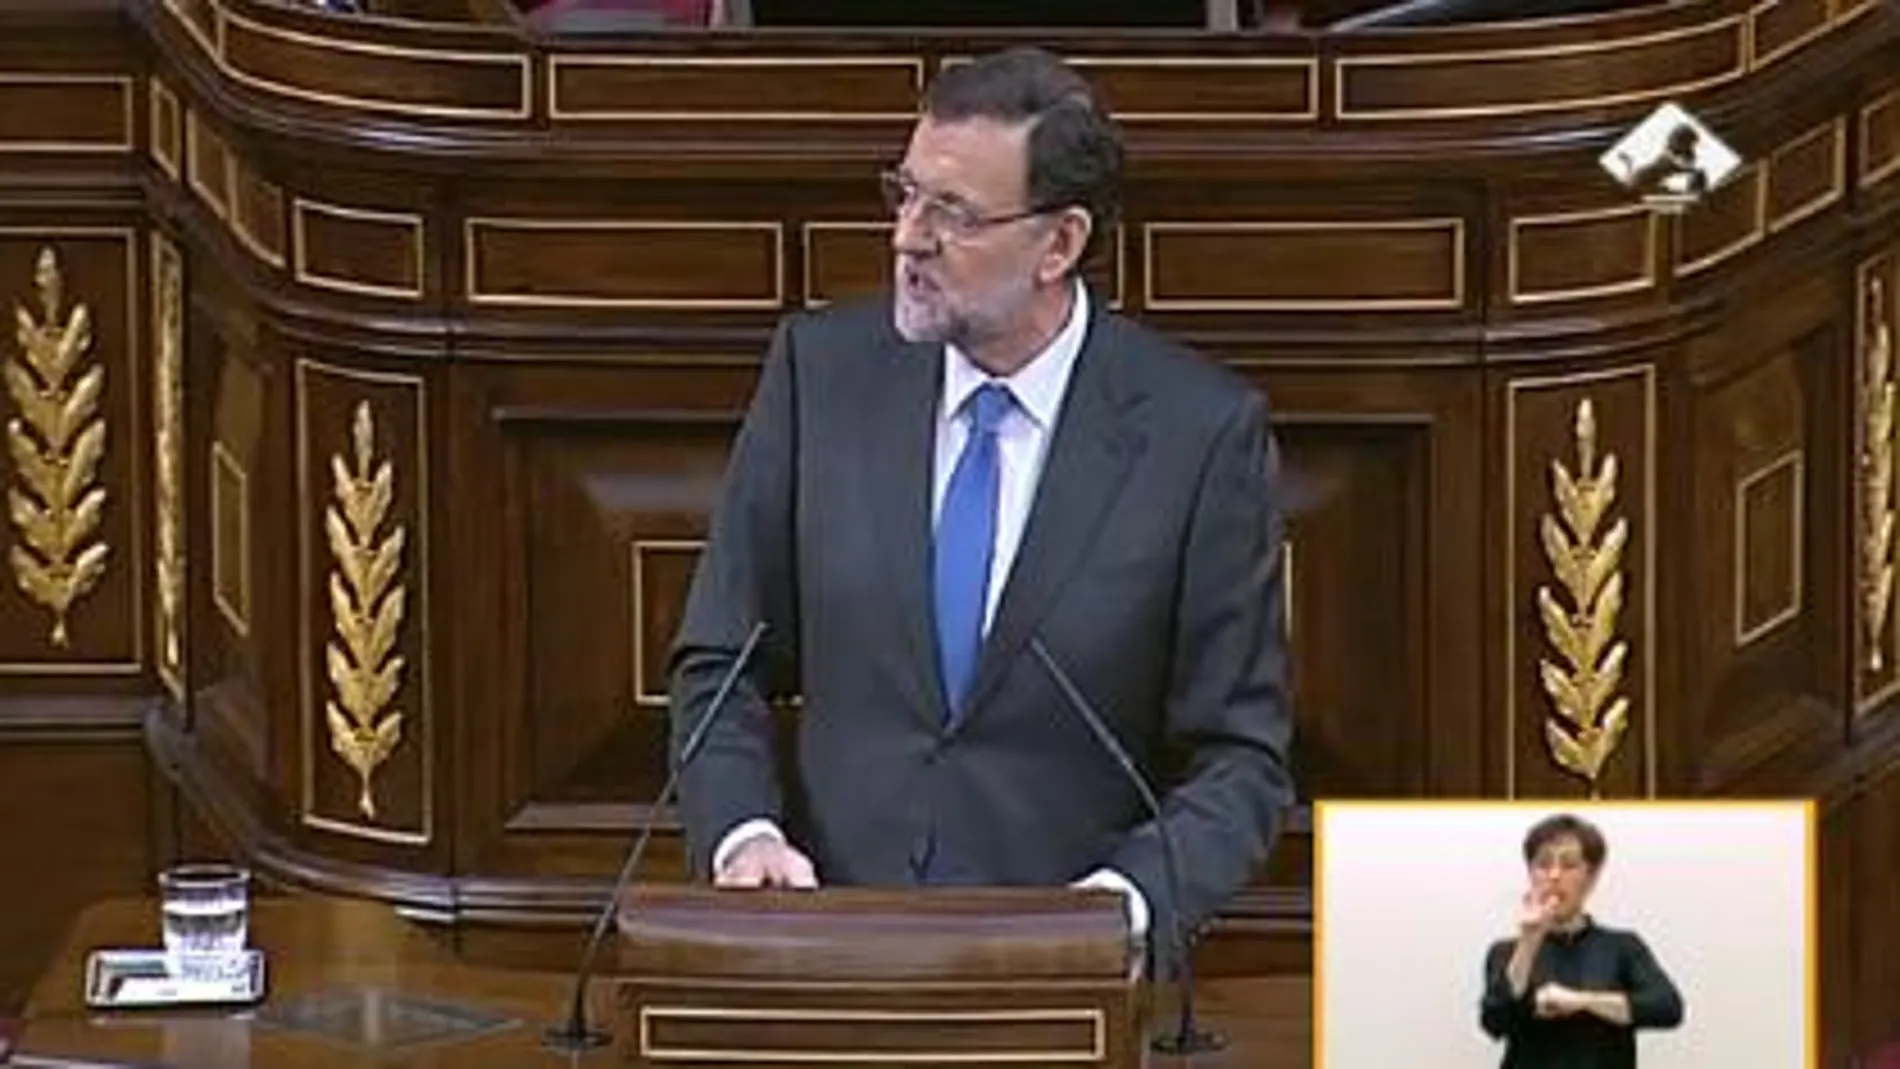 Rajoy concluye su intervención